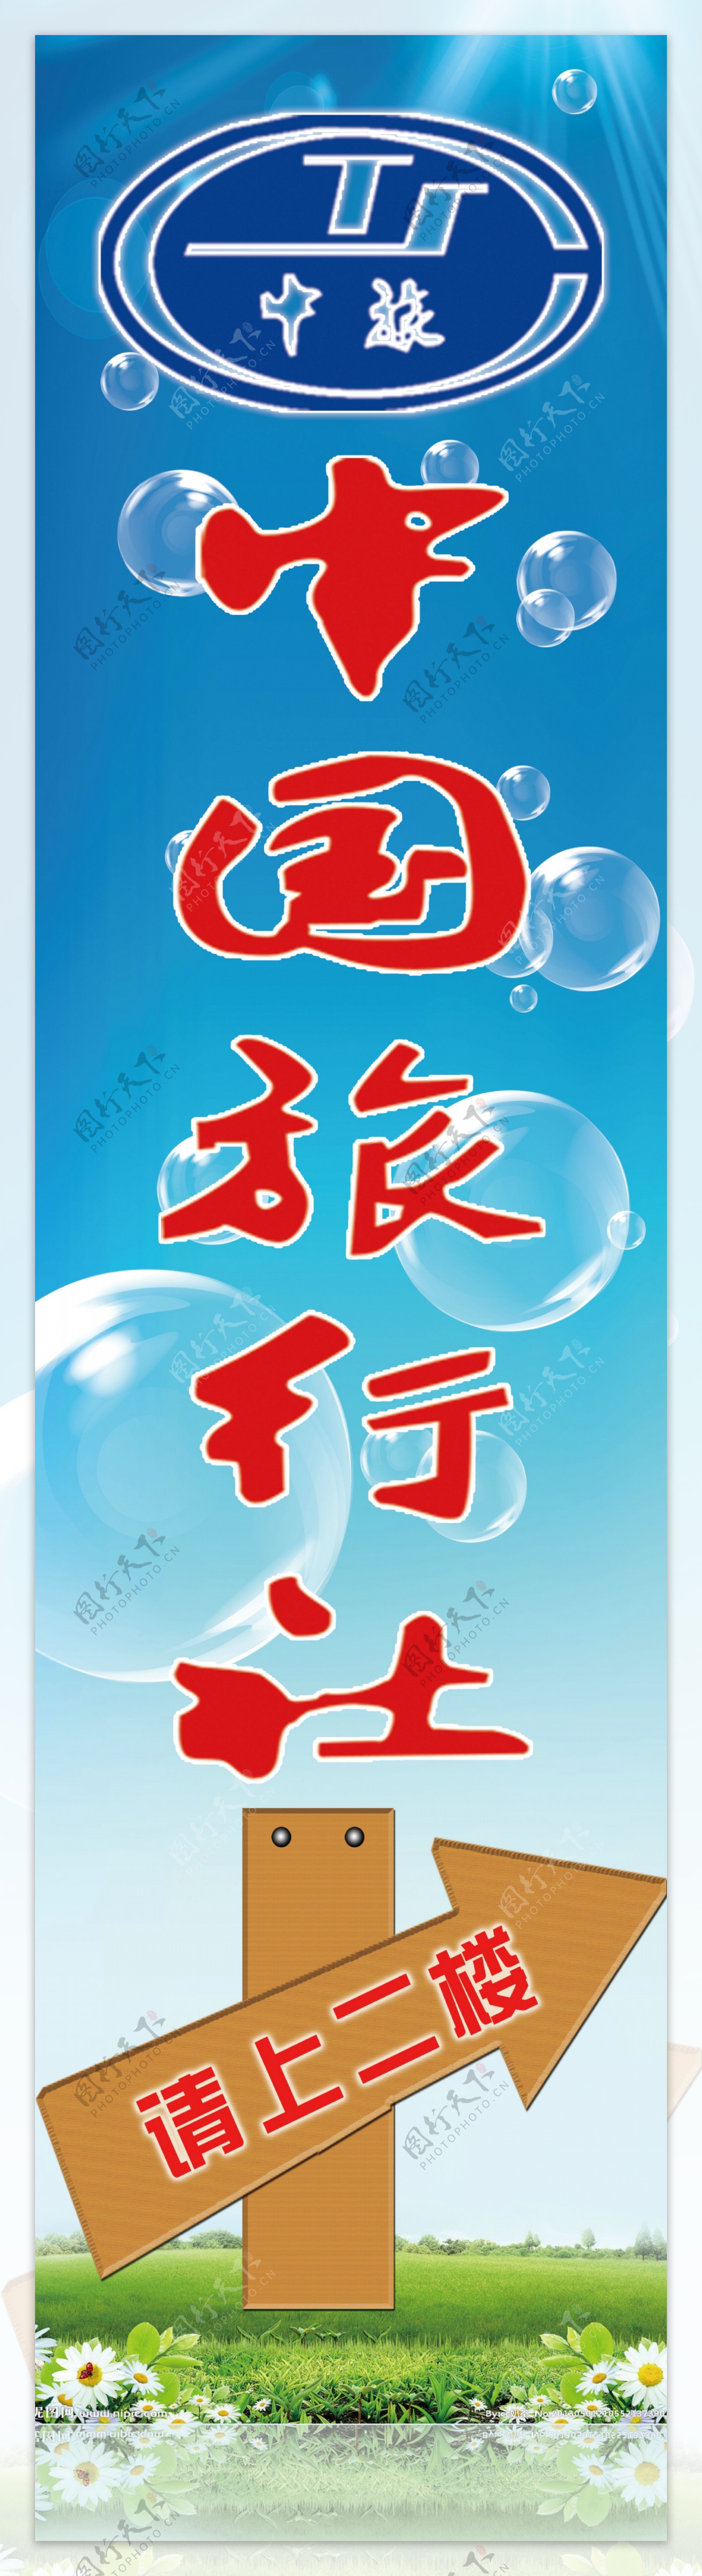 江西吉安新世界国际水汇水疗池-江西吉安新世界国际水汇-深圳市恒丰温泉泳池设备有限公司